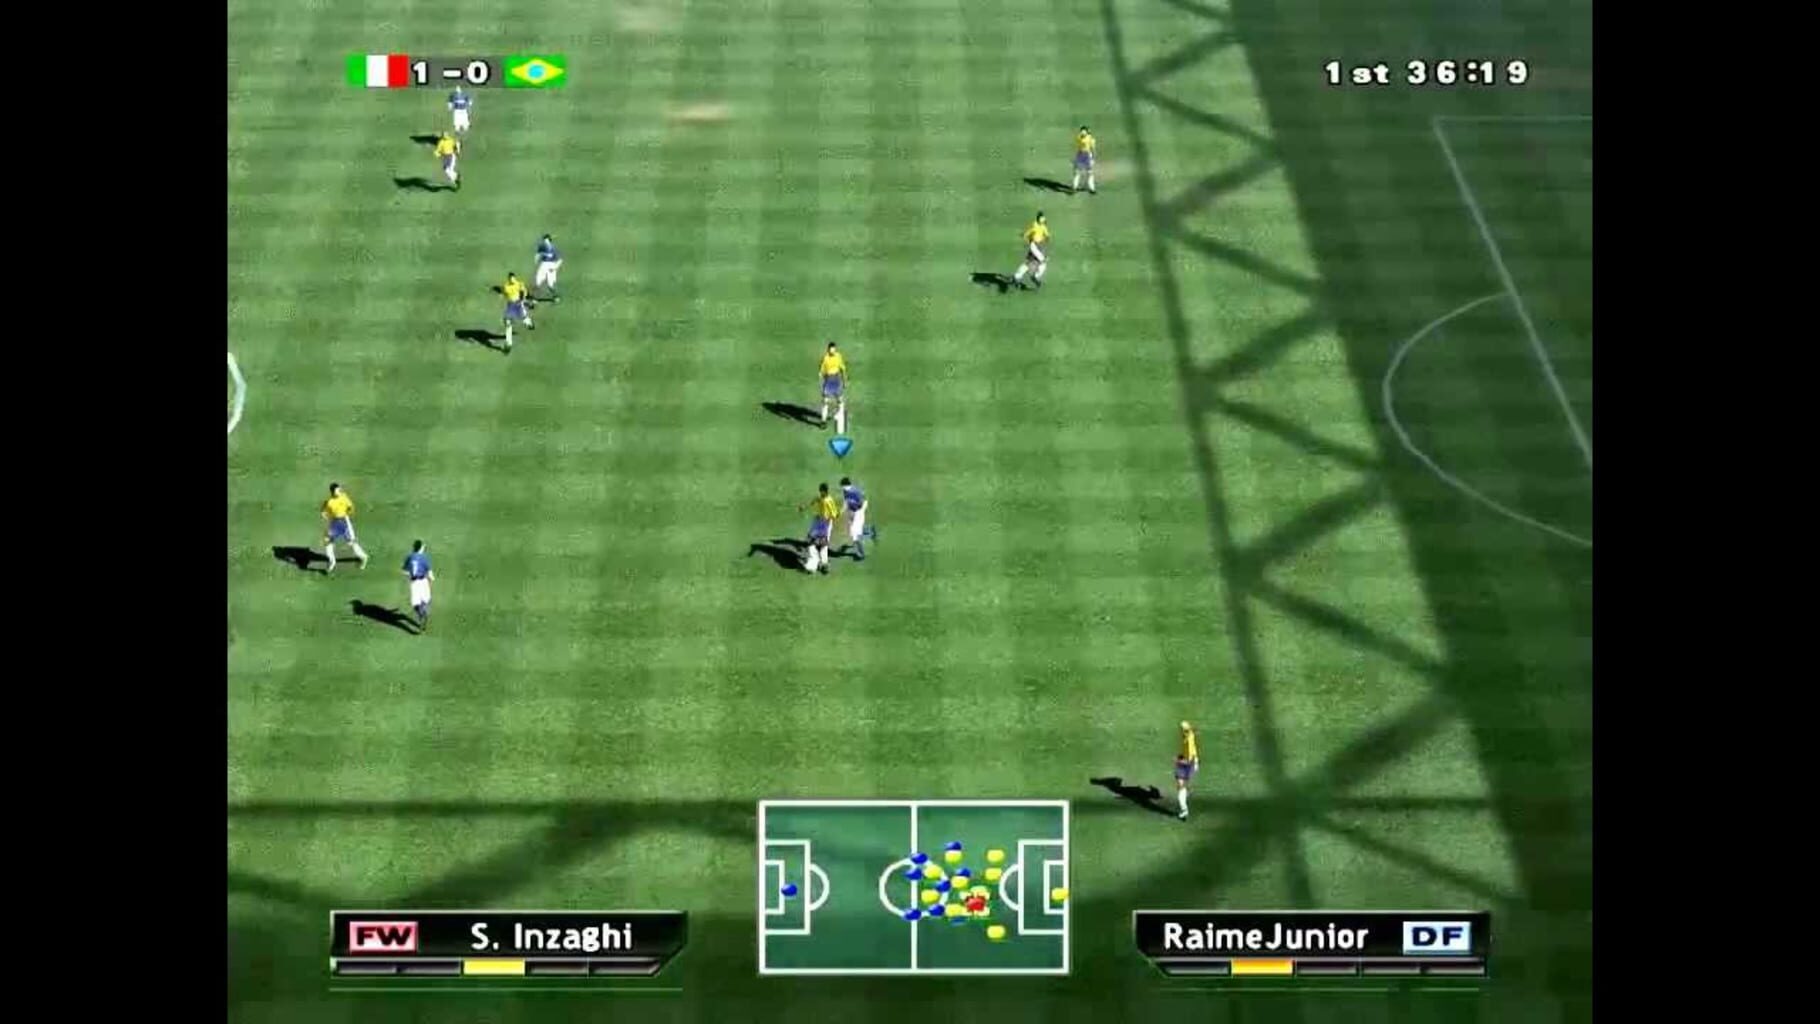 Pro Evolution Soccer Image